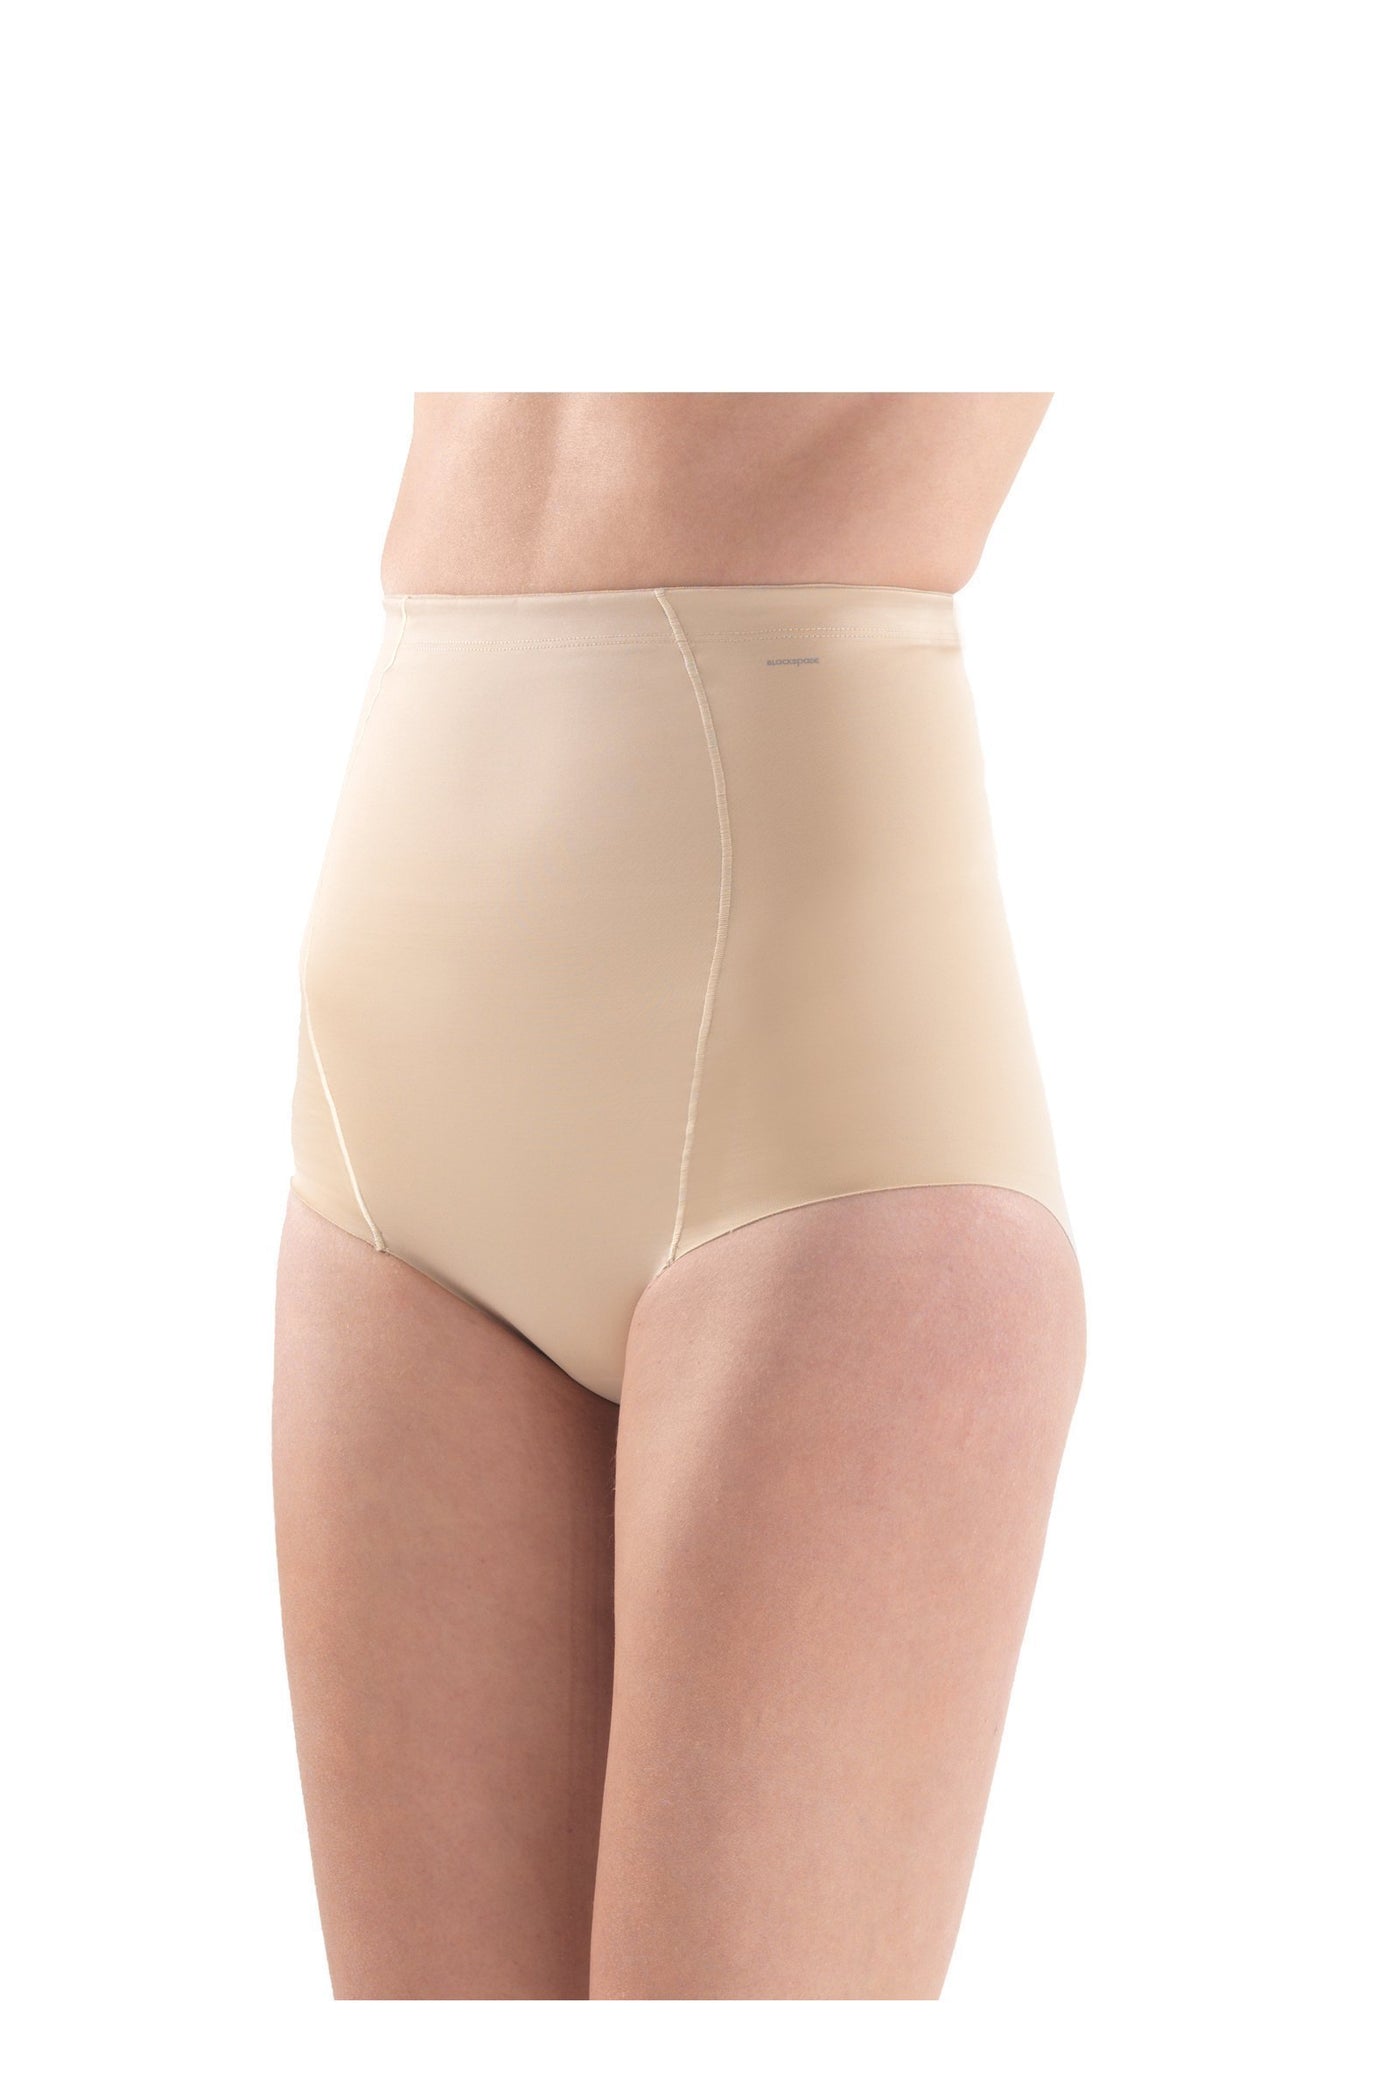 Ladies' Corset-1480 underwear blackspade beige L 36% Cotton 36% Modal 28% Elastane